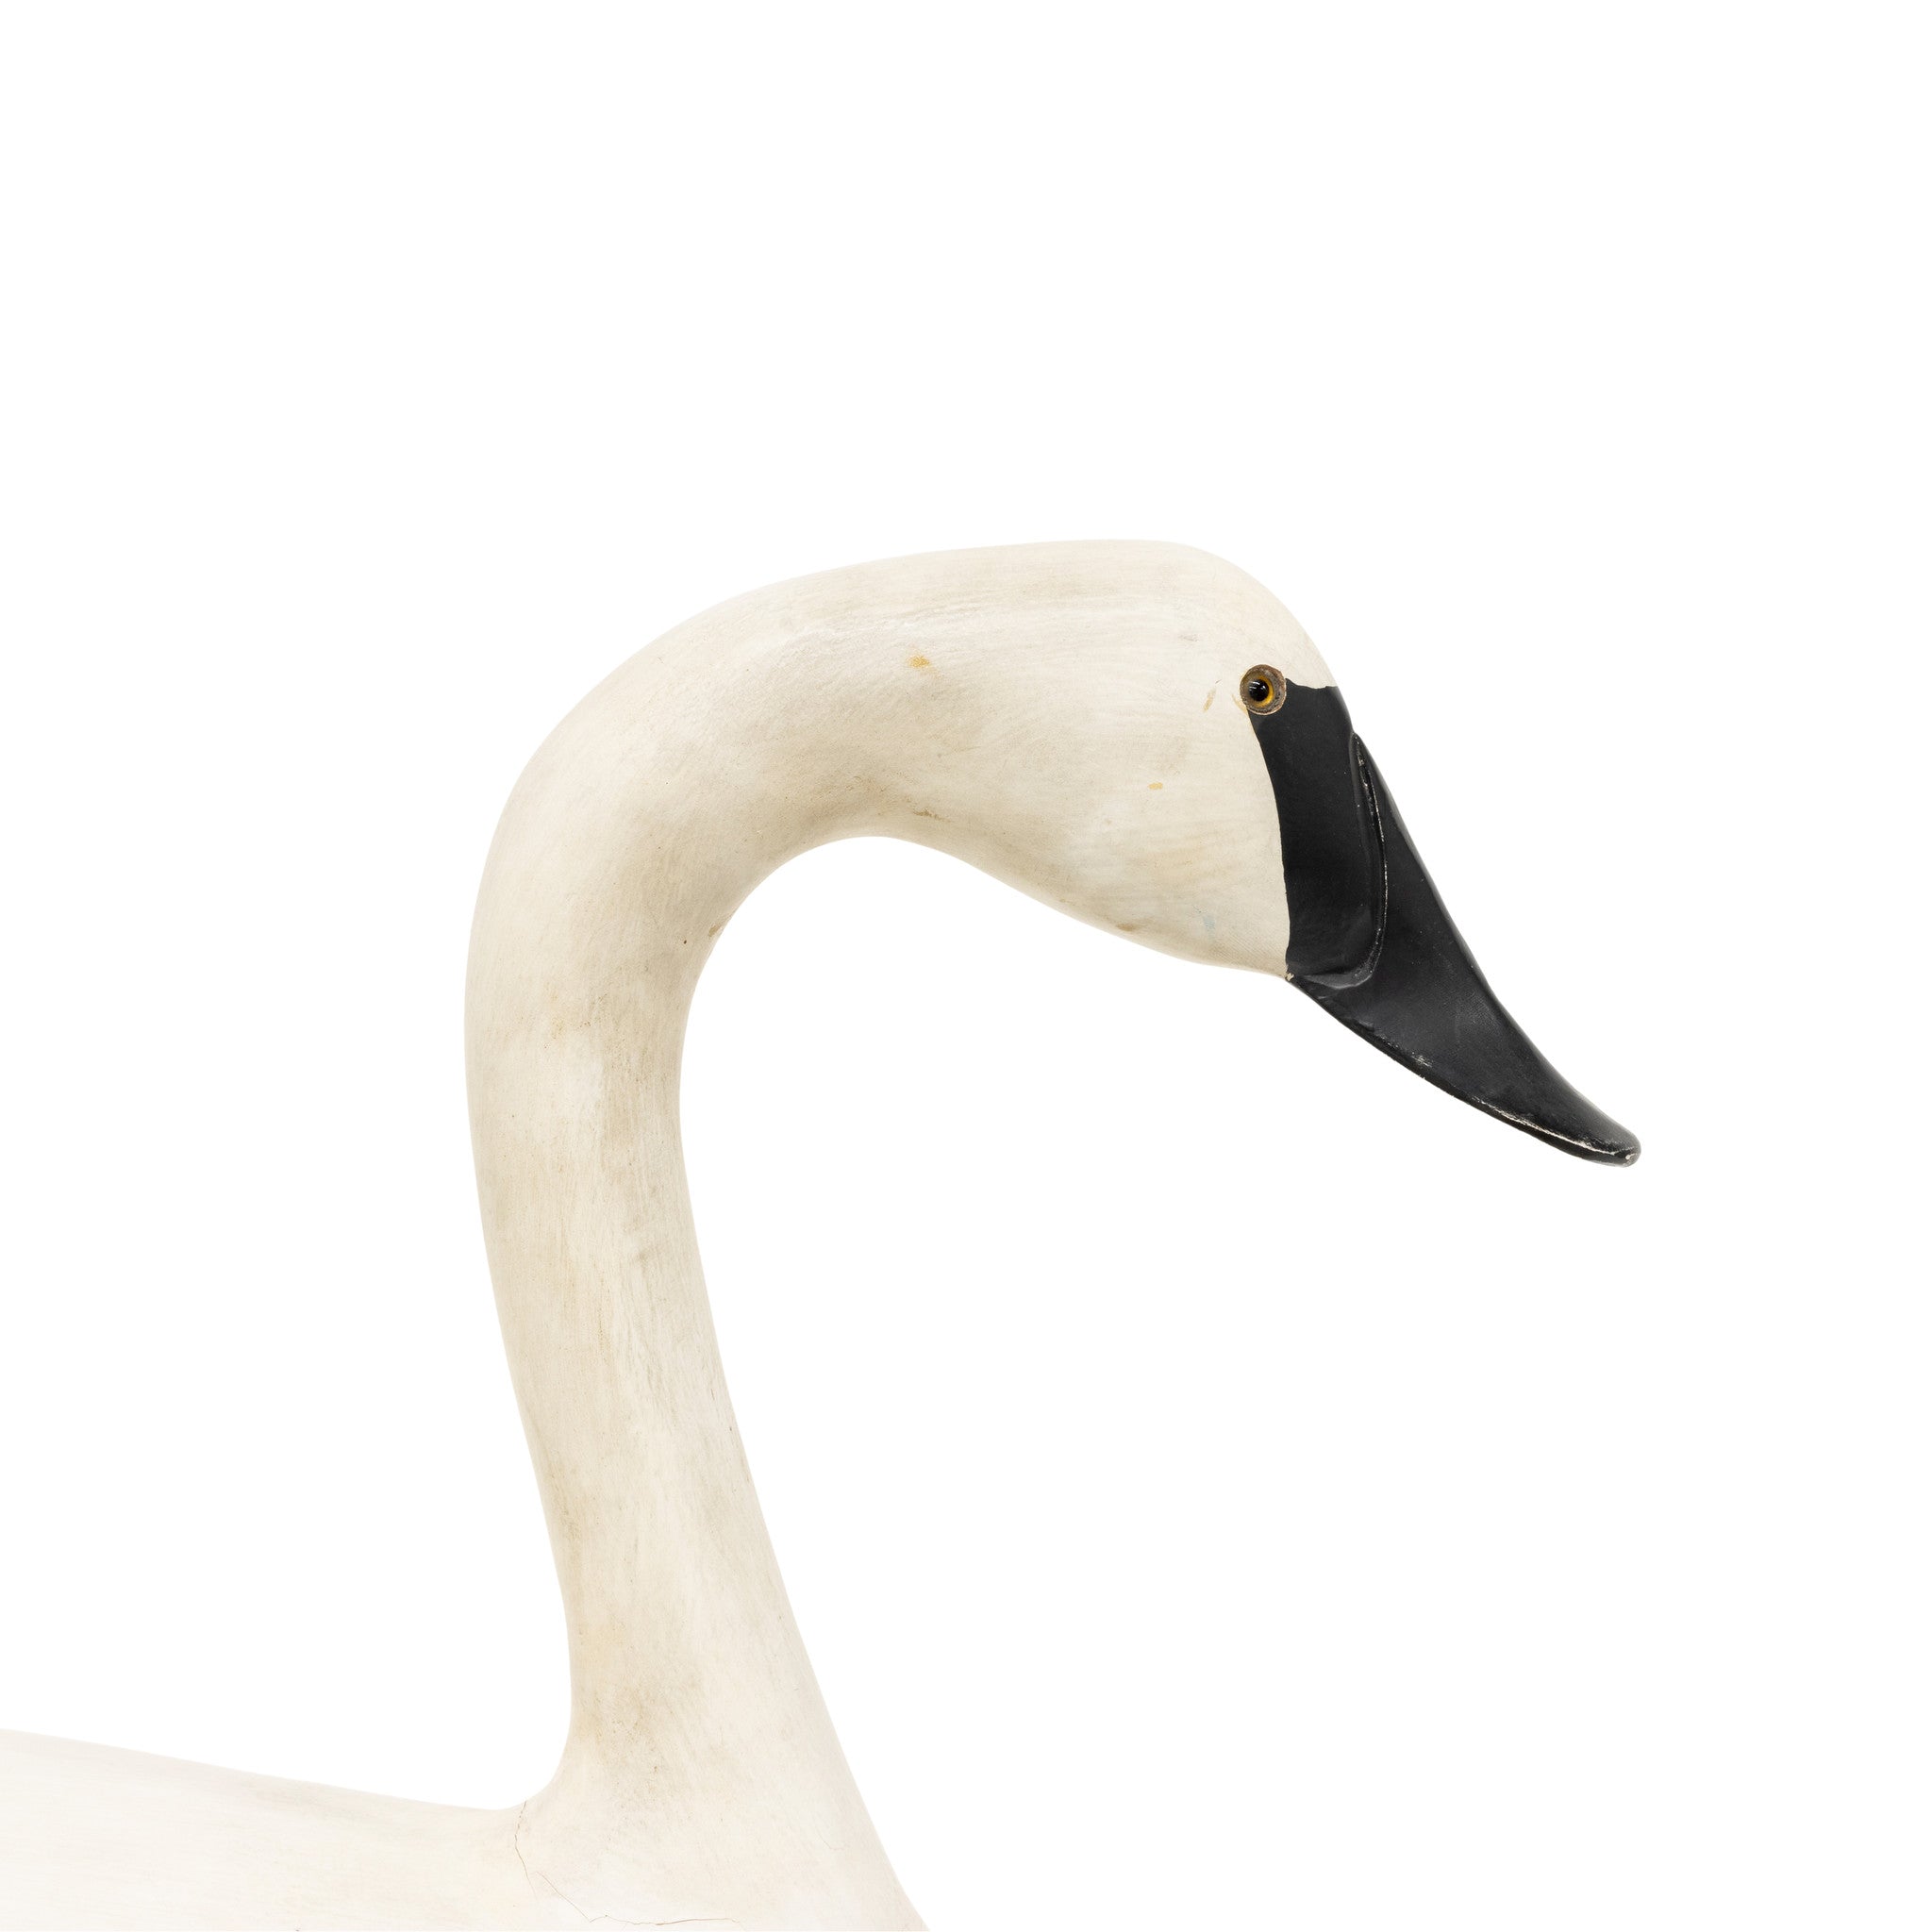 Swan Decoy by Daniel Bruffee